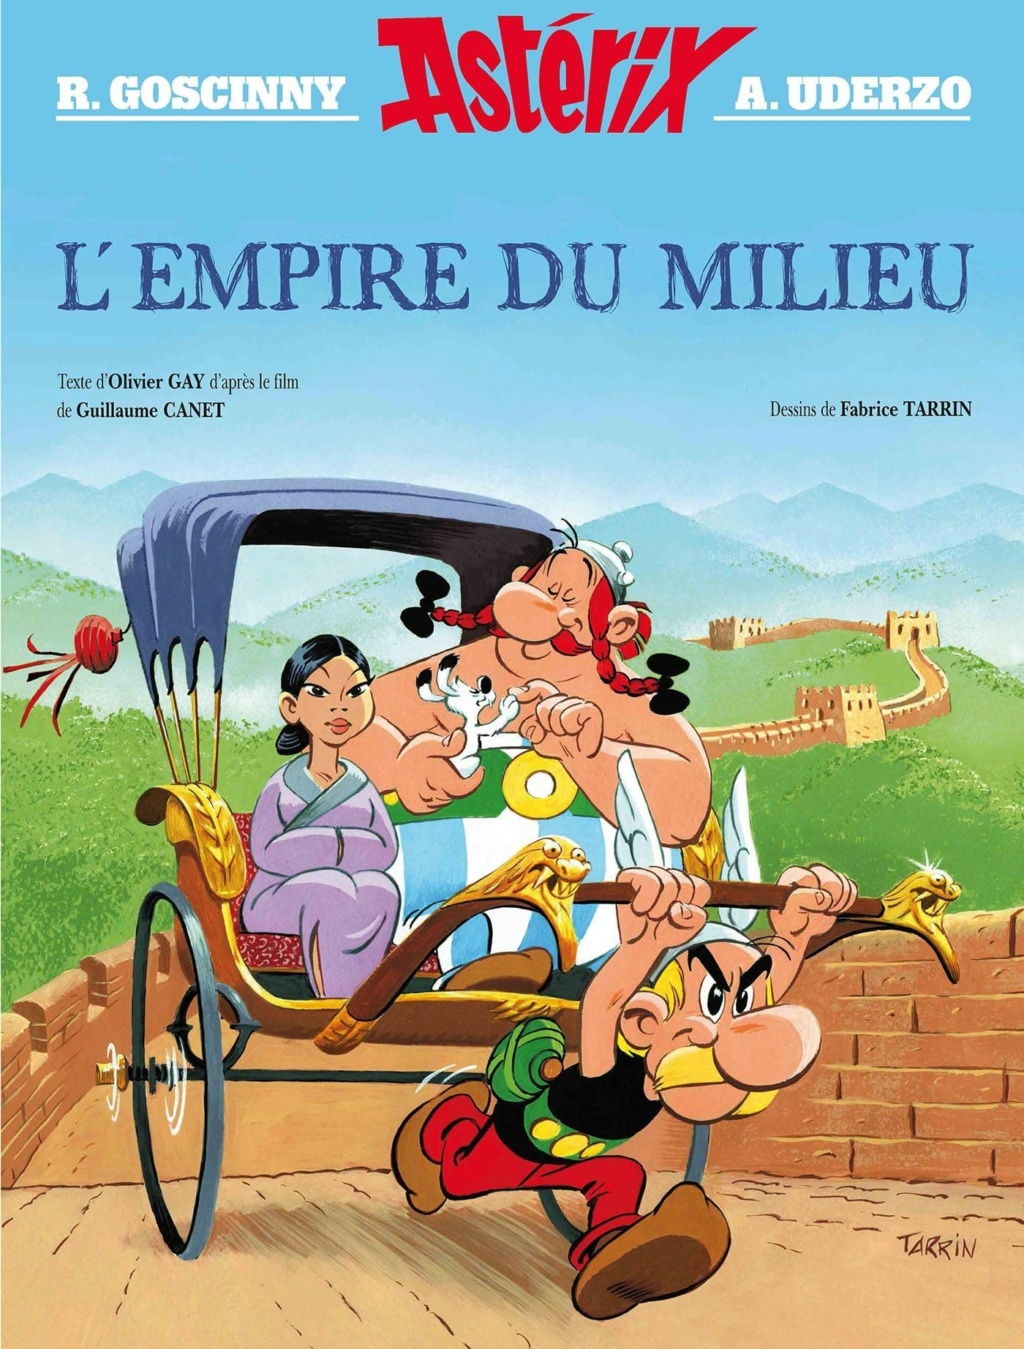 film - Astérix - Hors collection - Album illustré du film - L'Empire du Milieu 81wnk310